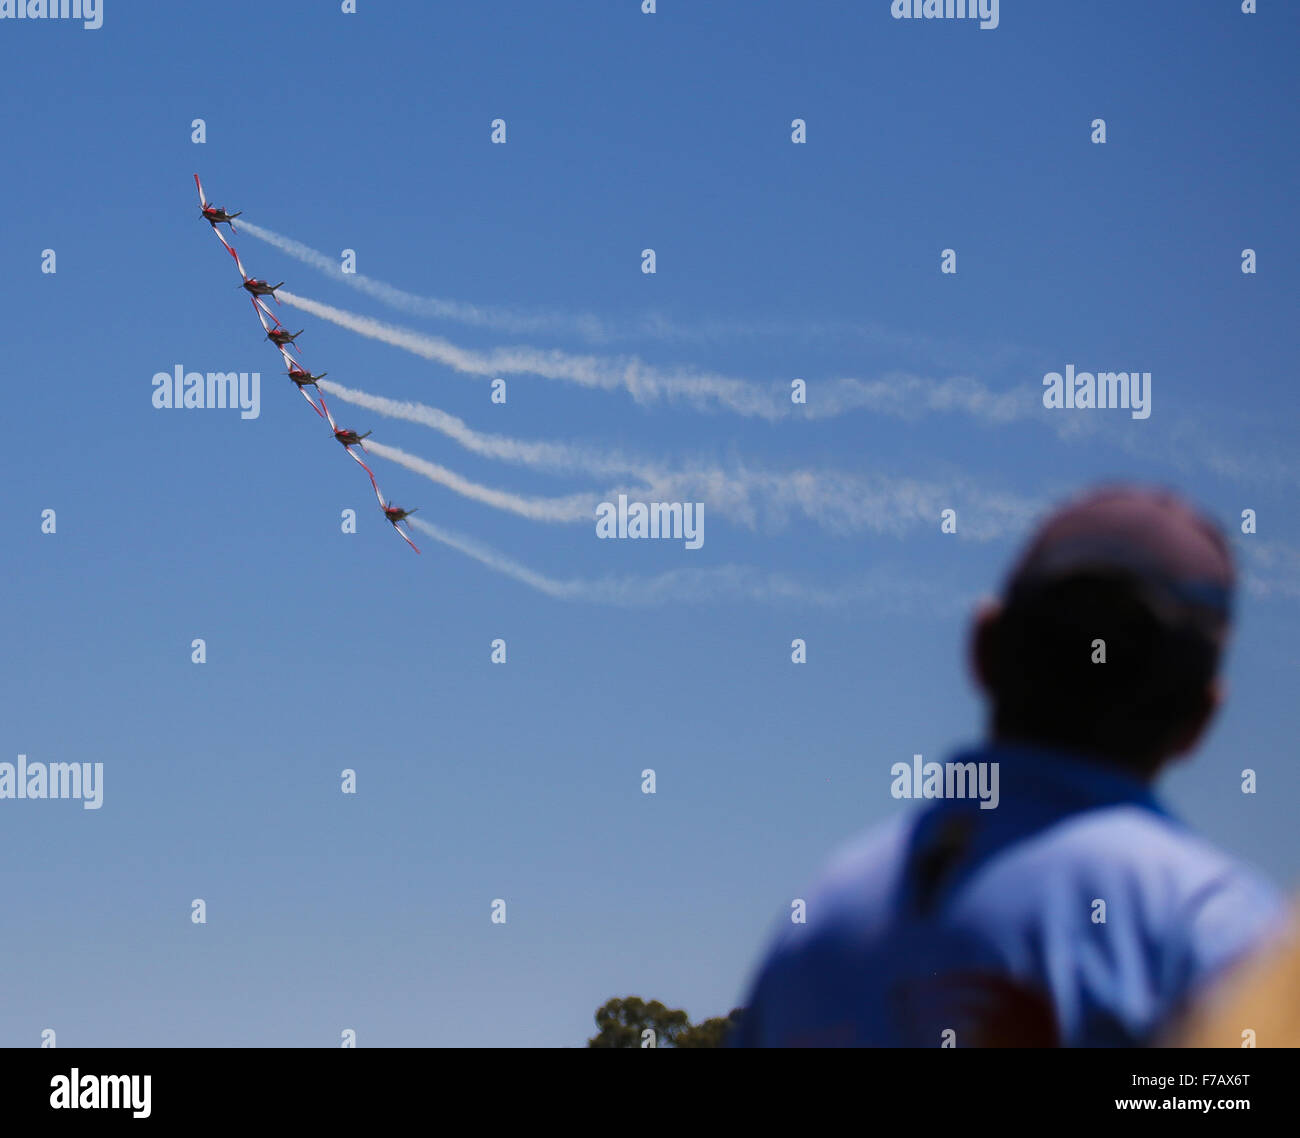 Royal Australian Air Force à roulettes dans Warbirds 2015, Beringen, NSW, Australie. Banque D'Images